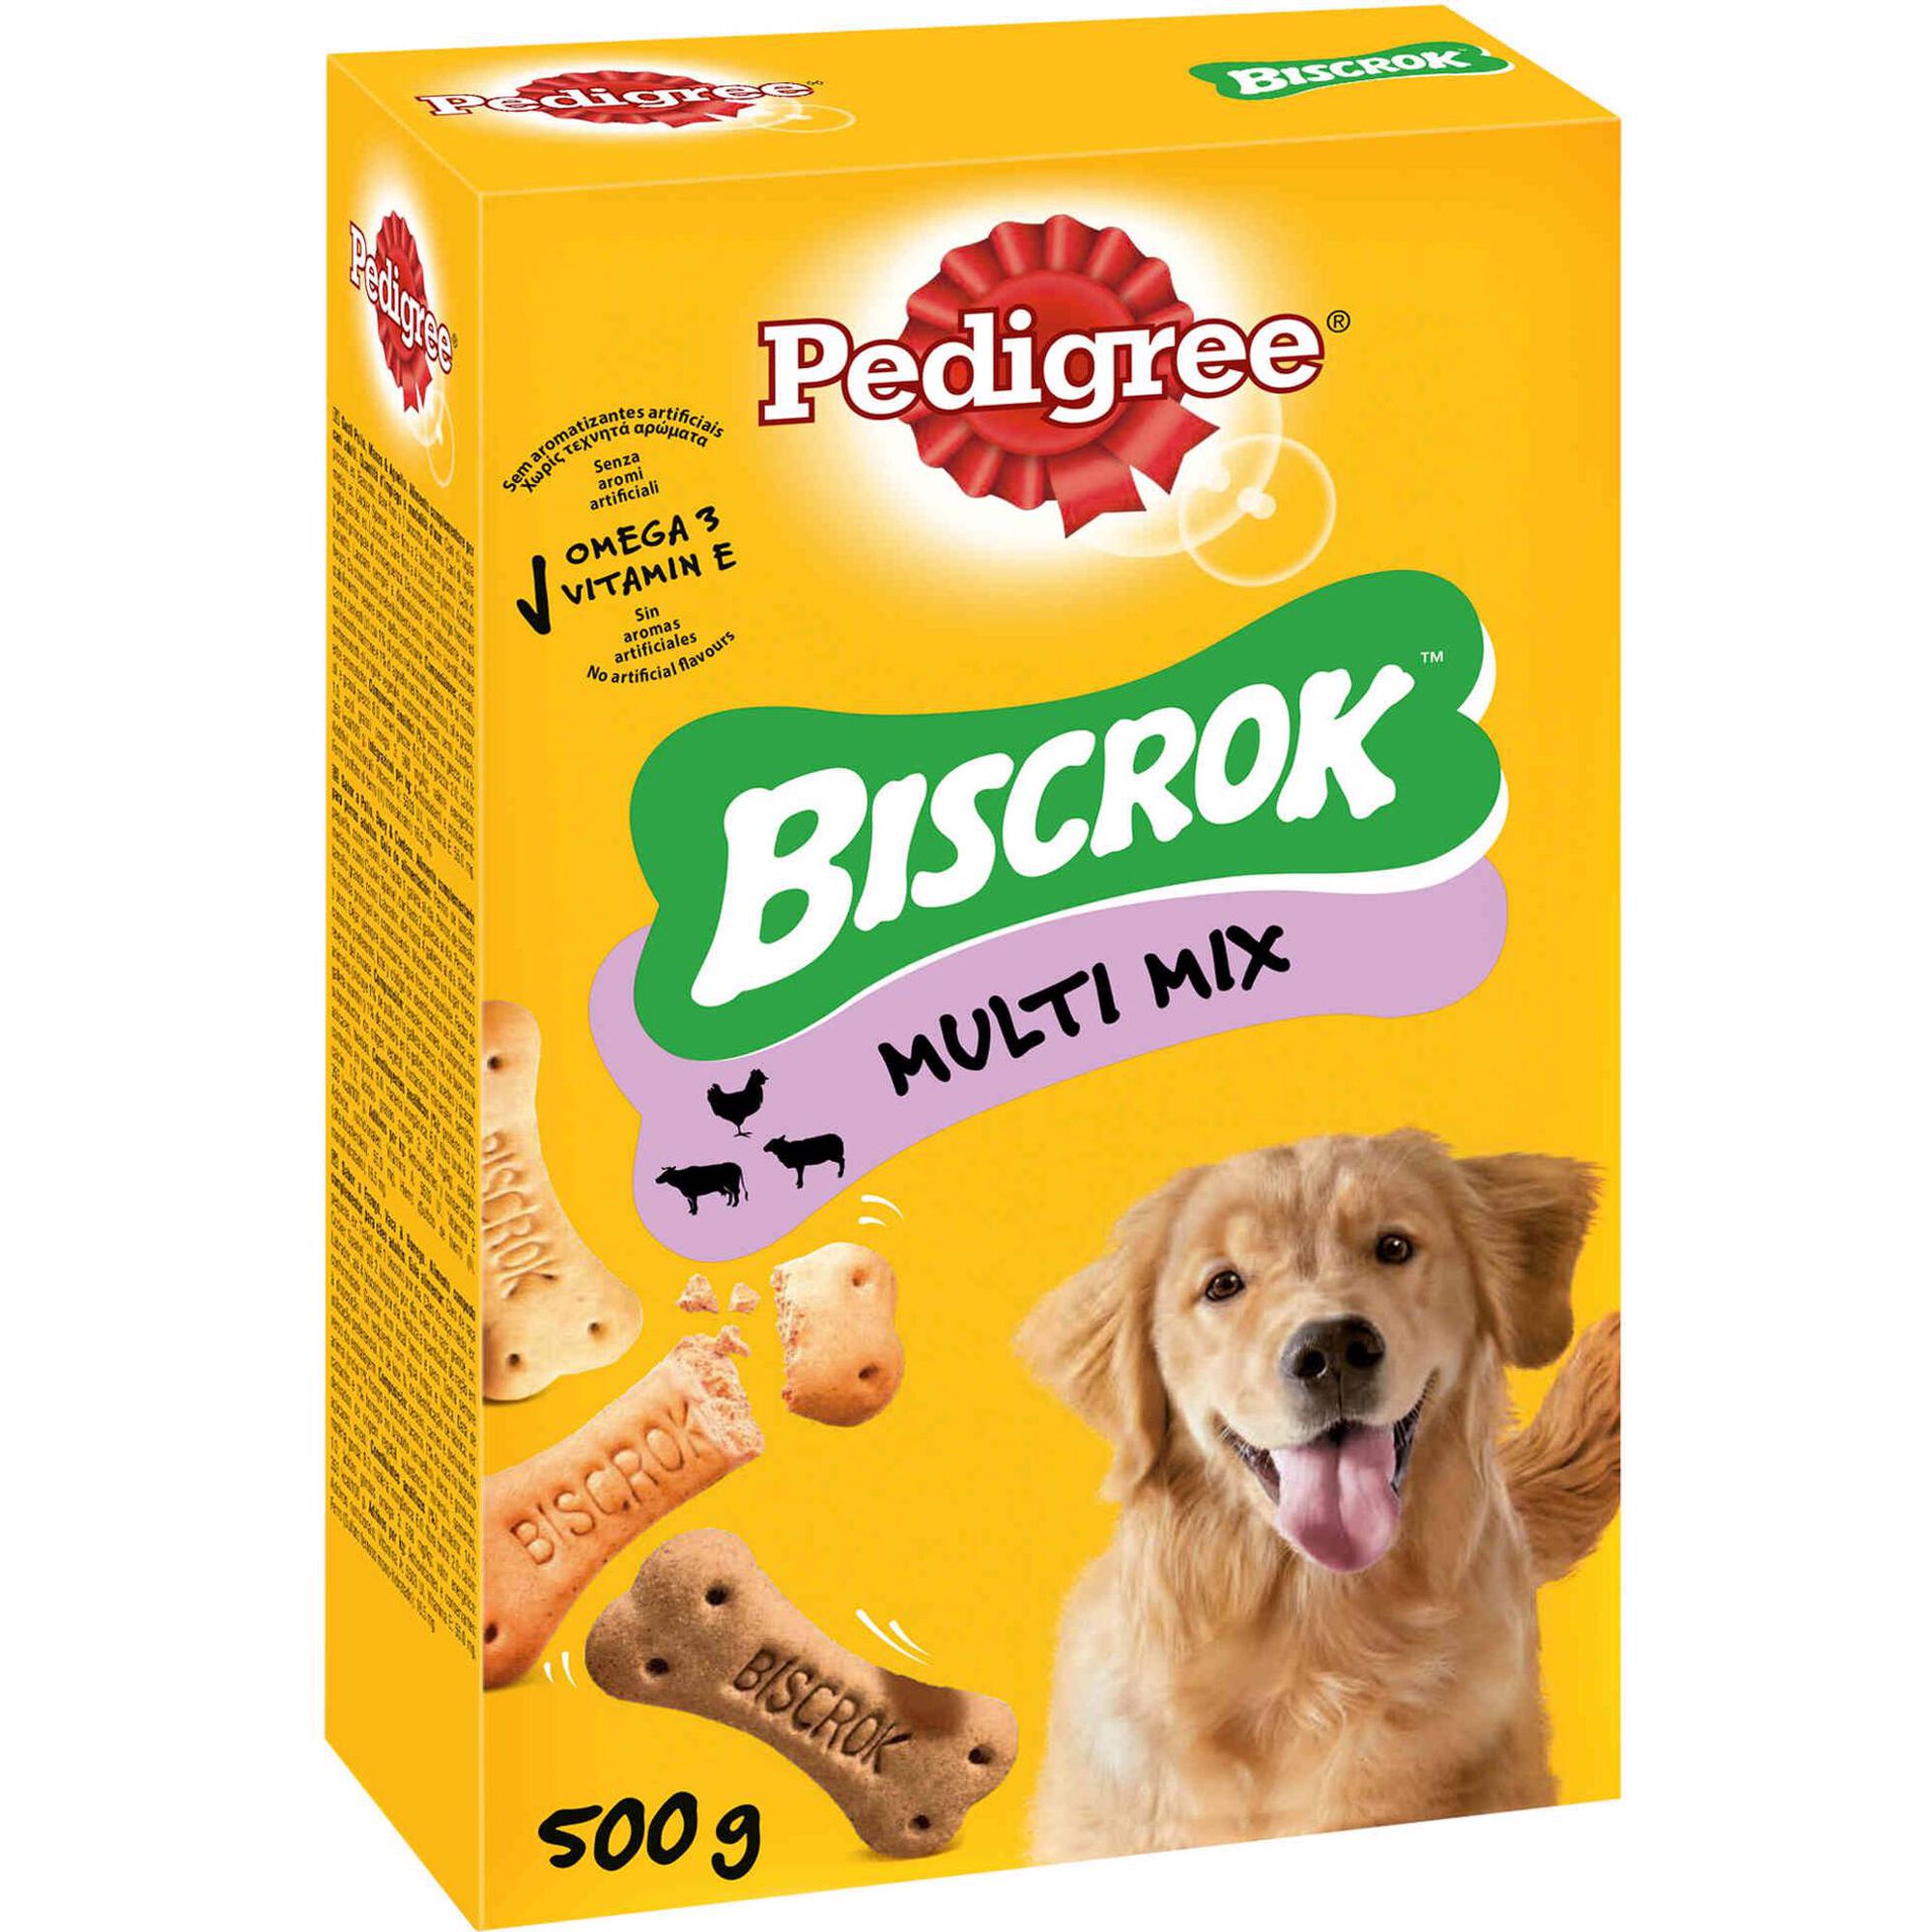 Biscoito para Cão Biscrok